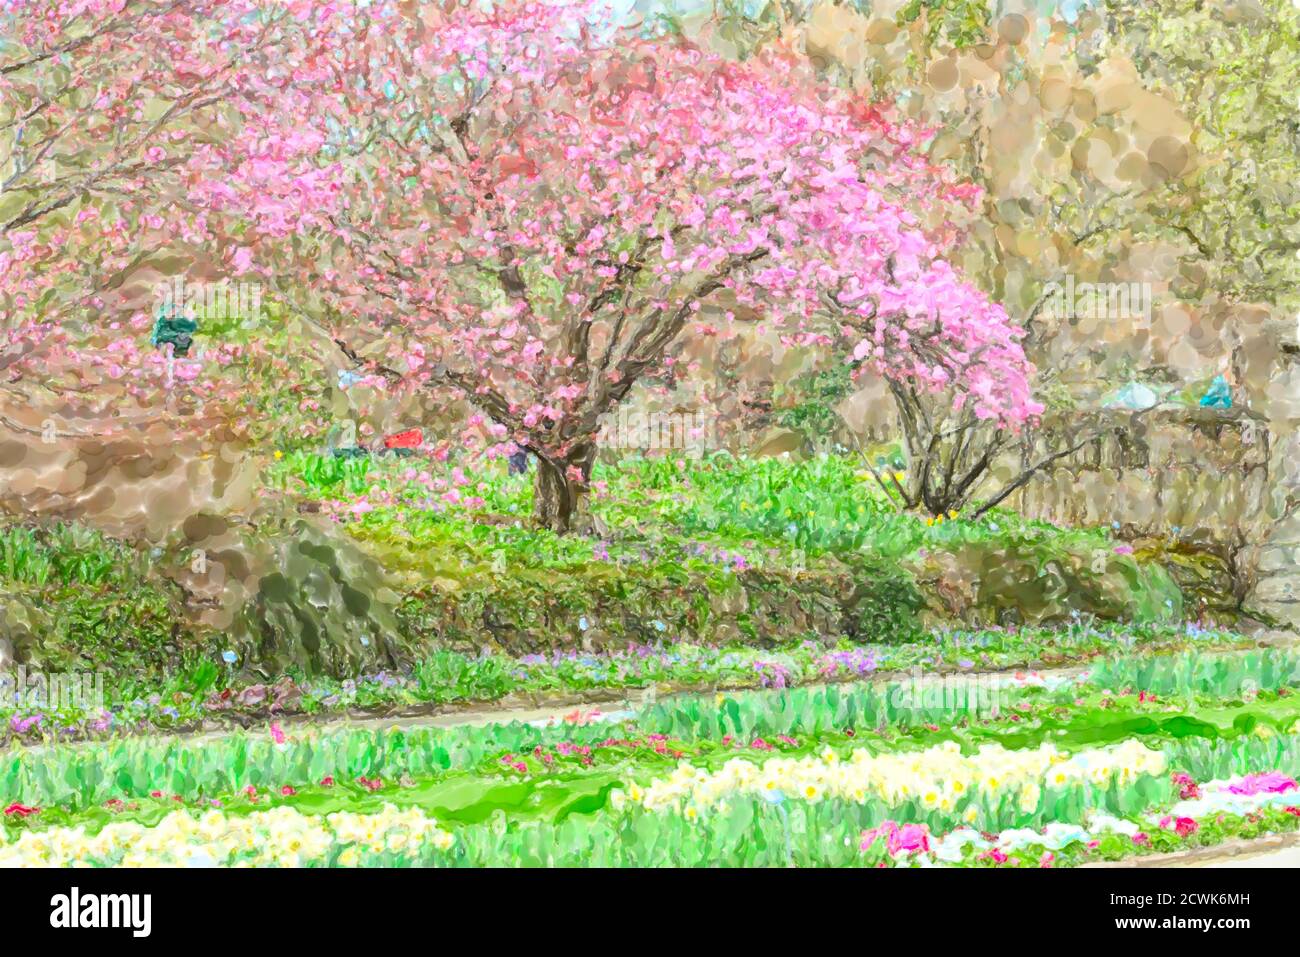 Illustration aquarelle du jardin botanique de Munich. Temps de floraison des cerisiers Banque D'Images